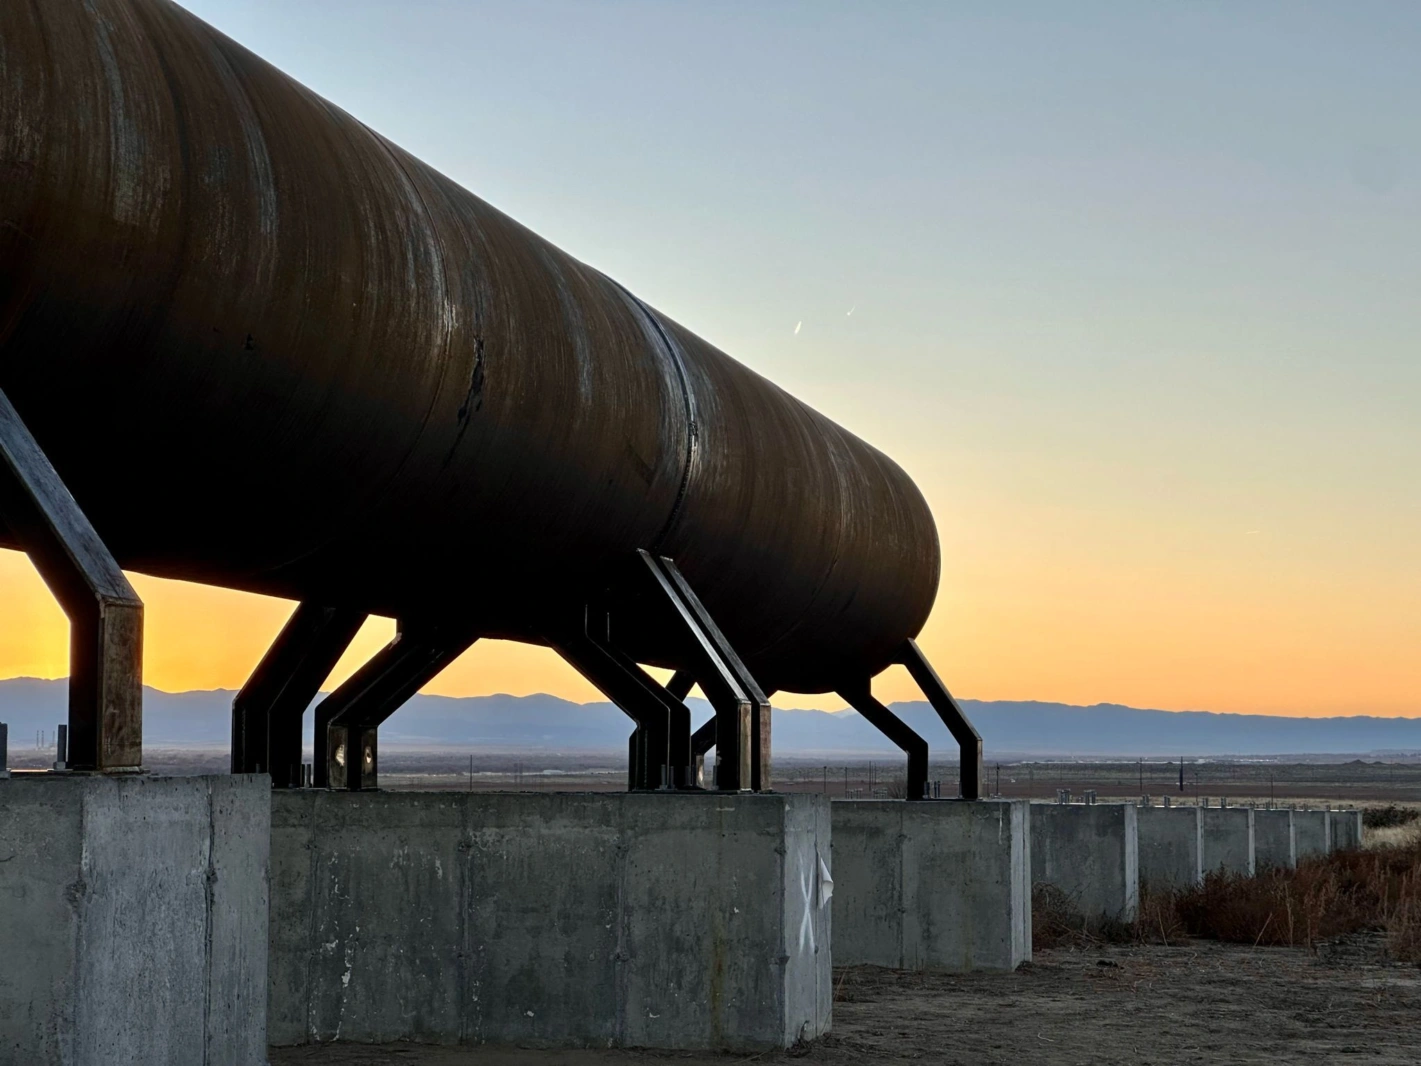 Der Bau der vollständigen Teststrecke des Hyperloop-Transportsystems von Swisspod am PuebloPlex in der Nähe des Flughafens Pueblo ist voll im Gange. Fotos: siwsspod